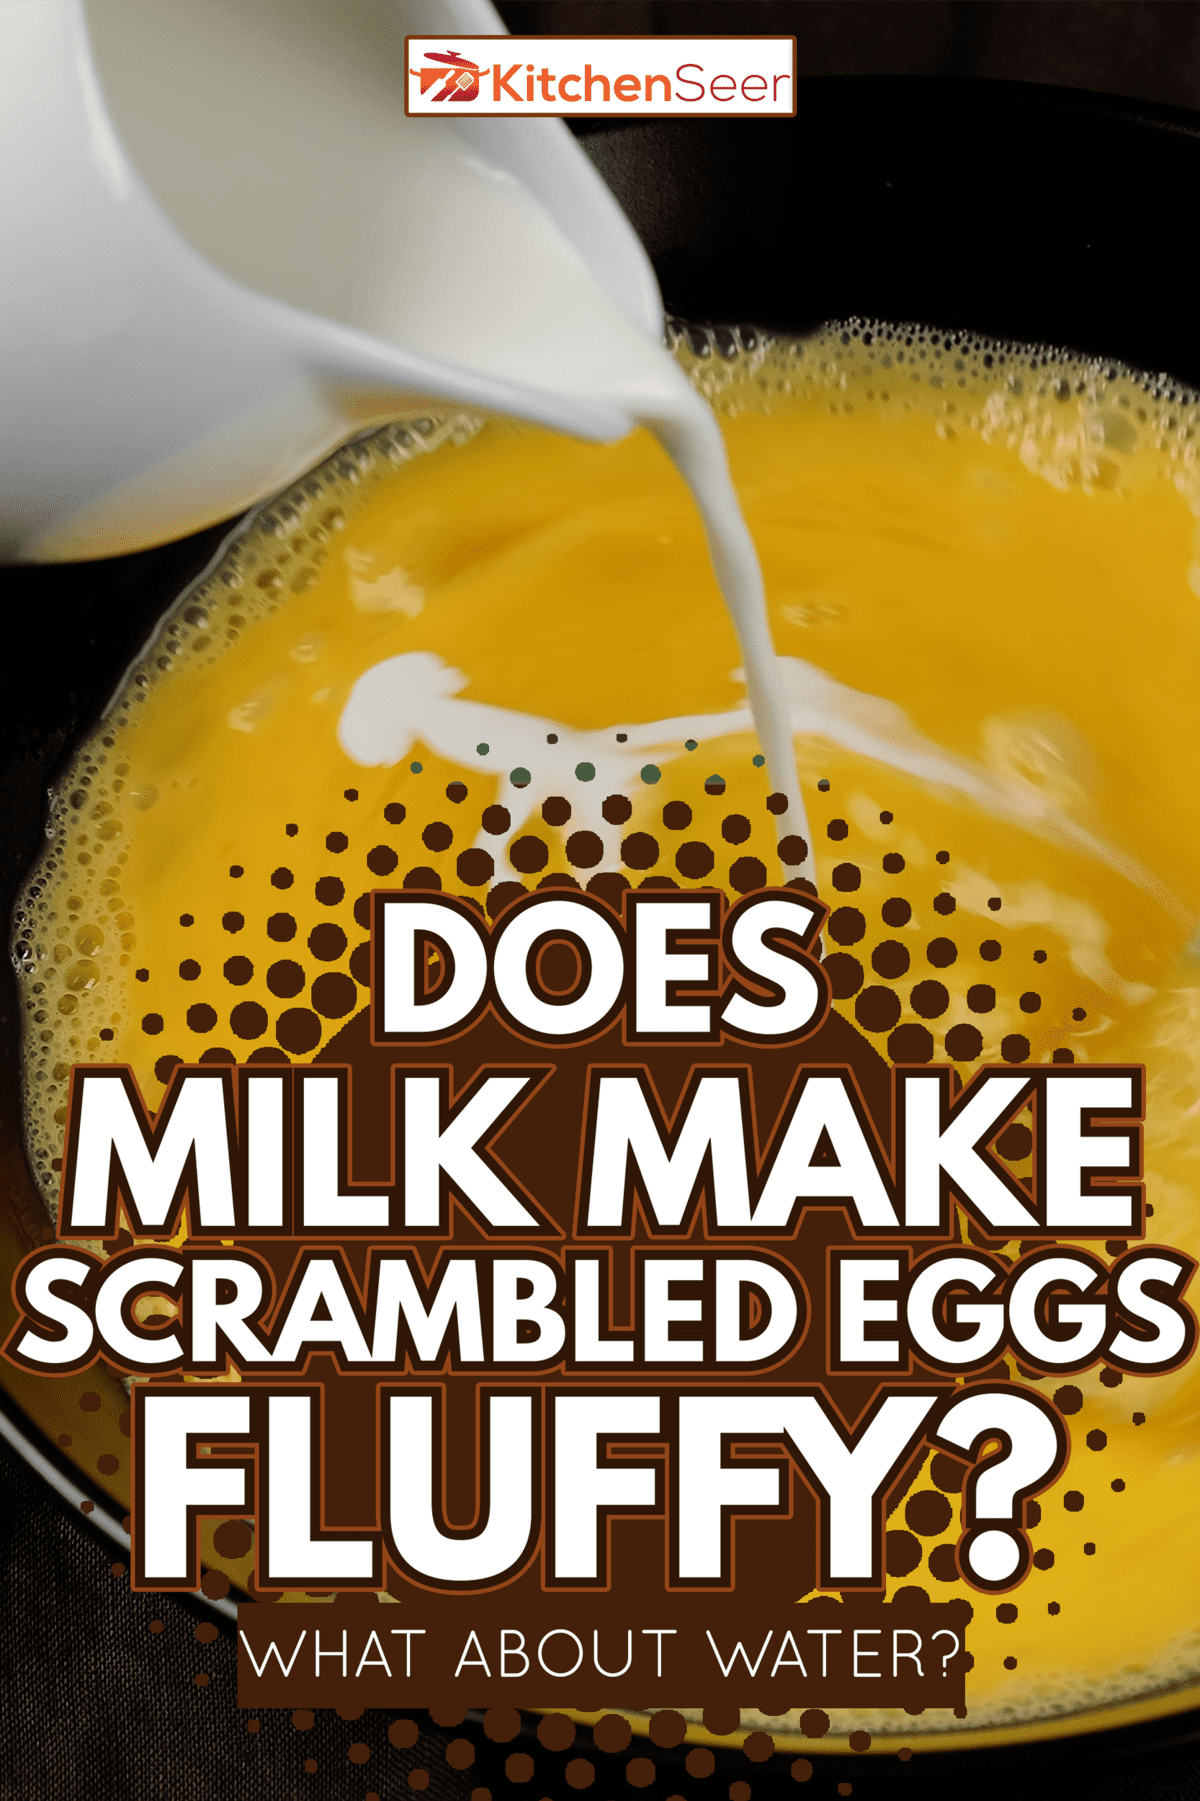 用叉子倒牛奶和搅拌鸡蛋。煮炒鸡蛋，煎蛋卷——牛奶会让炒鸡蛋变蓬松吗?水呢